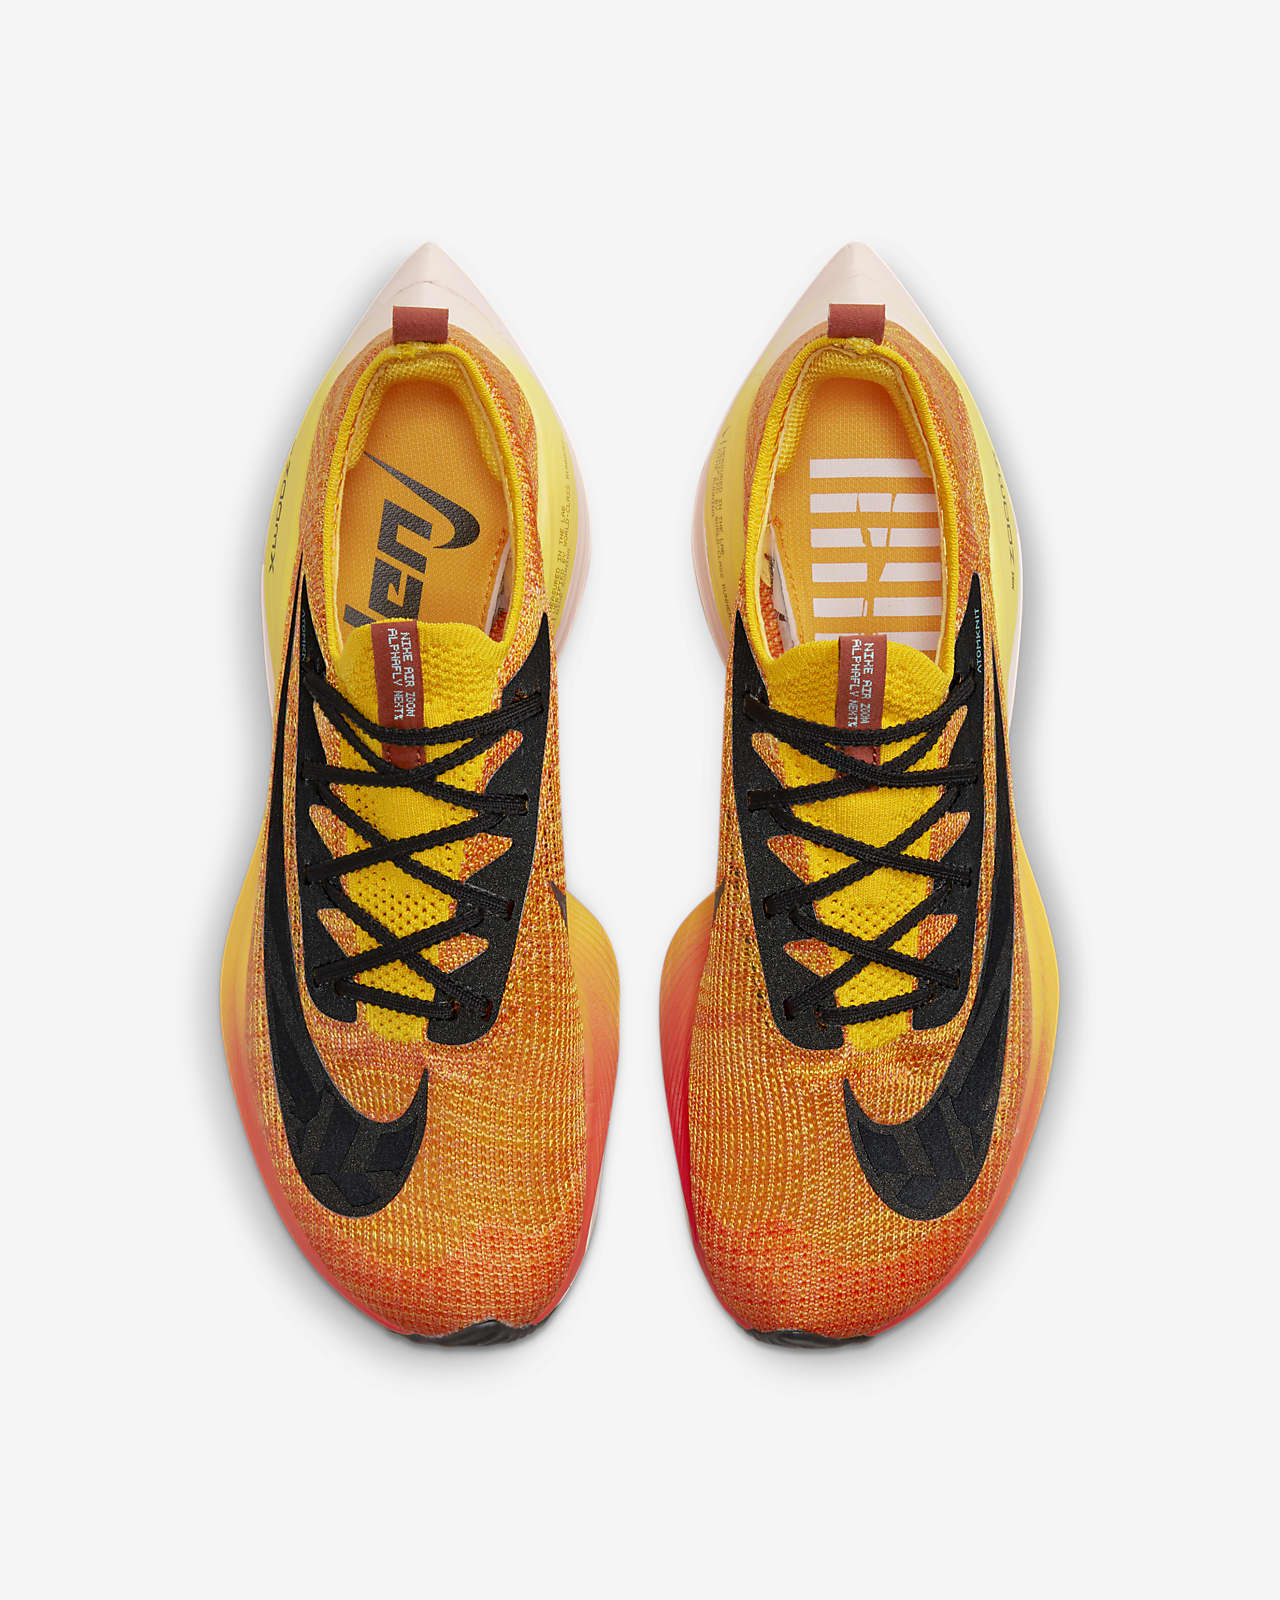 ستائر دانتيل Nike Air Zoom Alphafly NEXT% Flyknit Ekiden Road Racing Shoes ... ستائر دانتيل